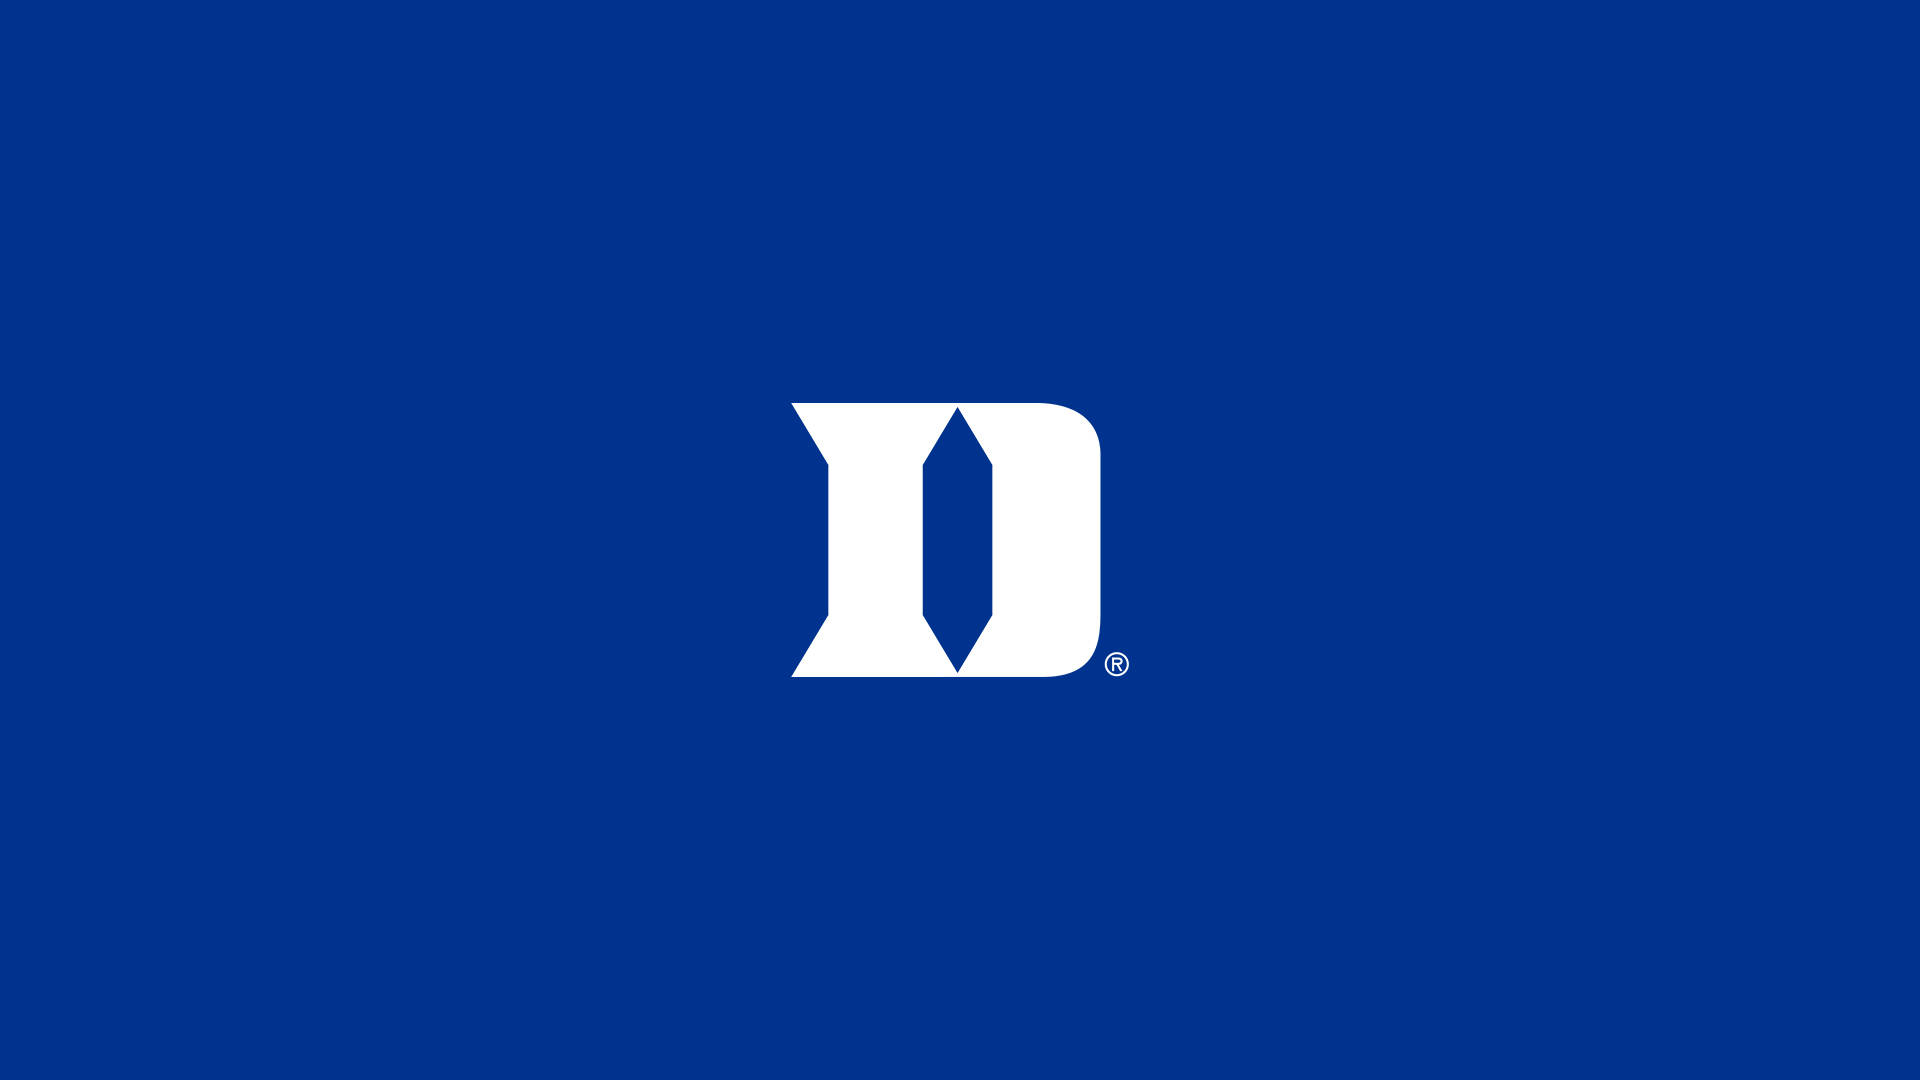 Duke Blue Devils University Initial Logo Background